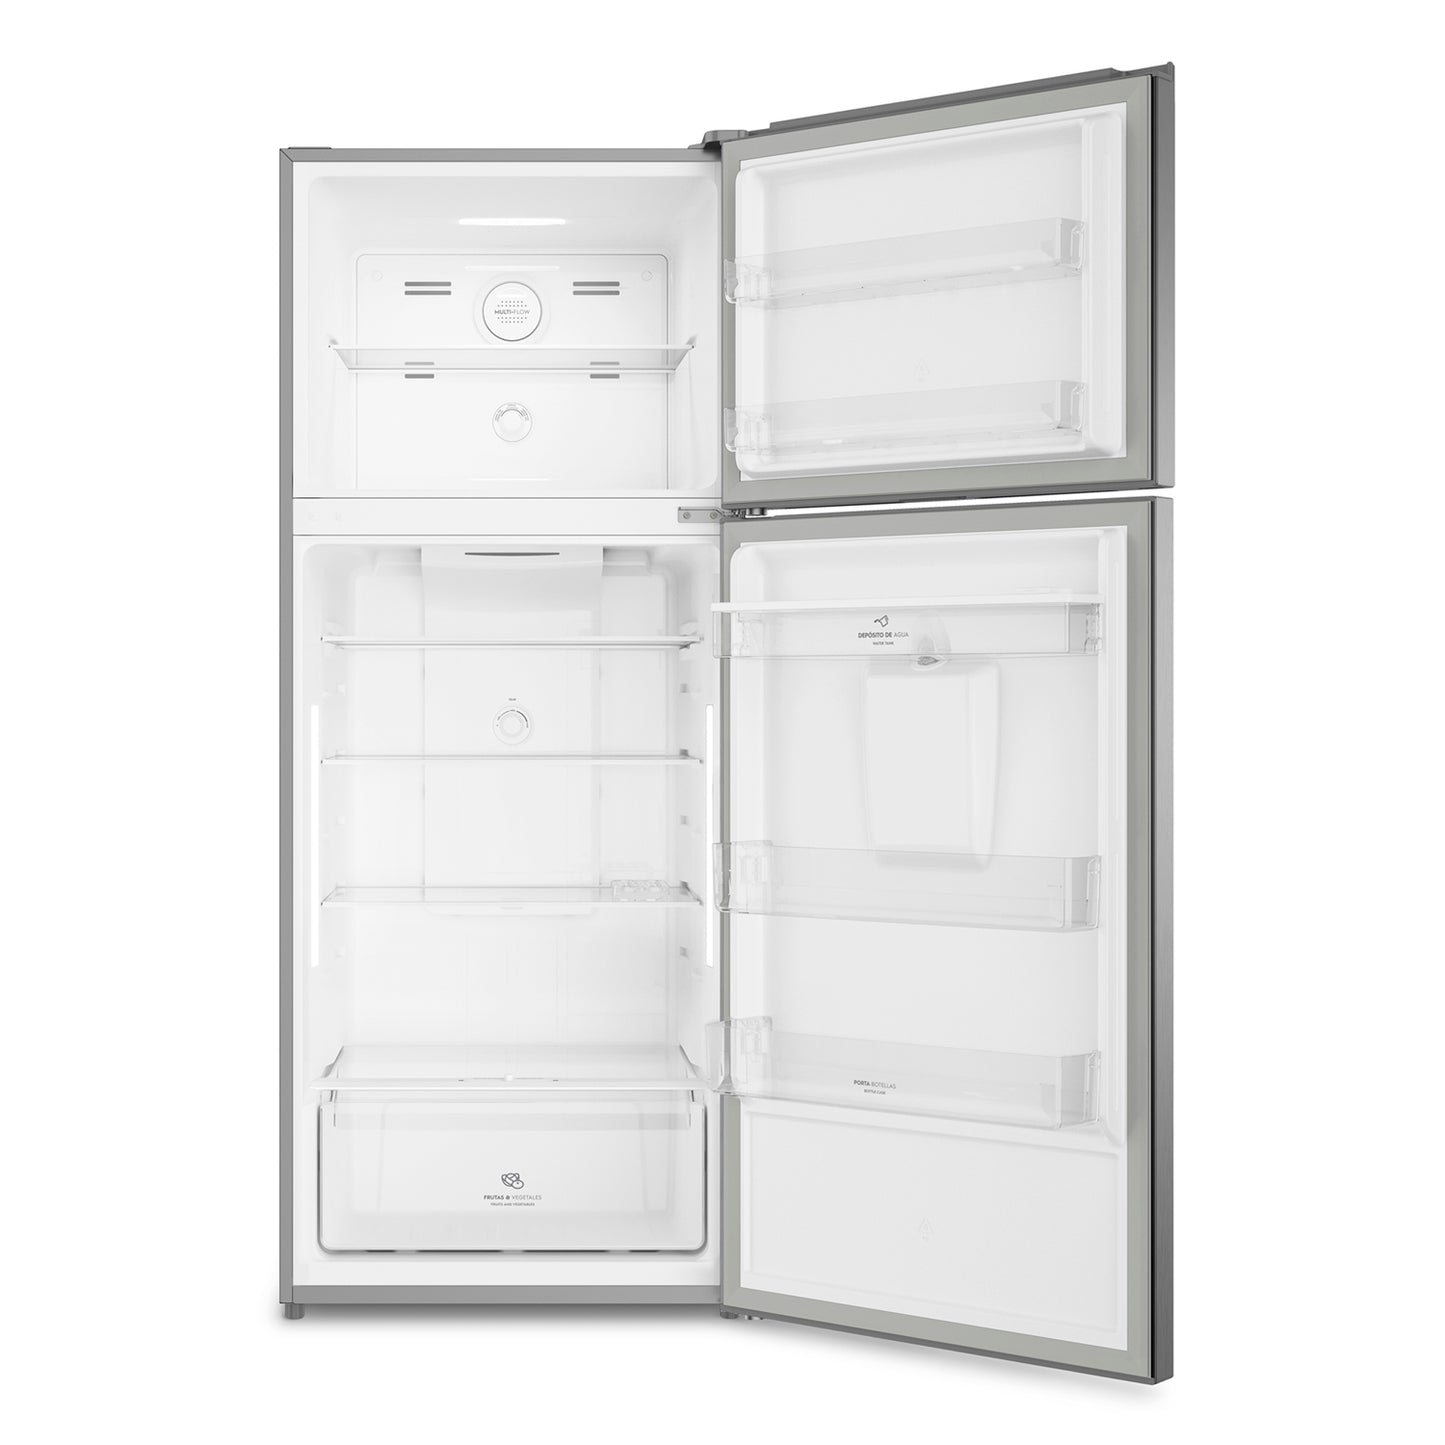 Refrigerador Top No Frost Altus 1430W 425 Lts Mademsa